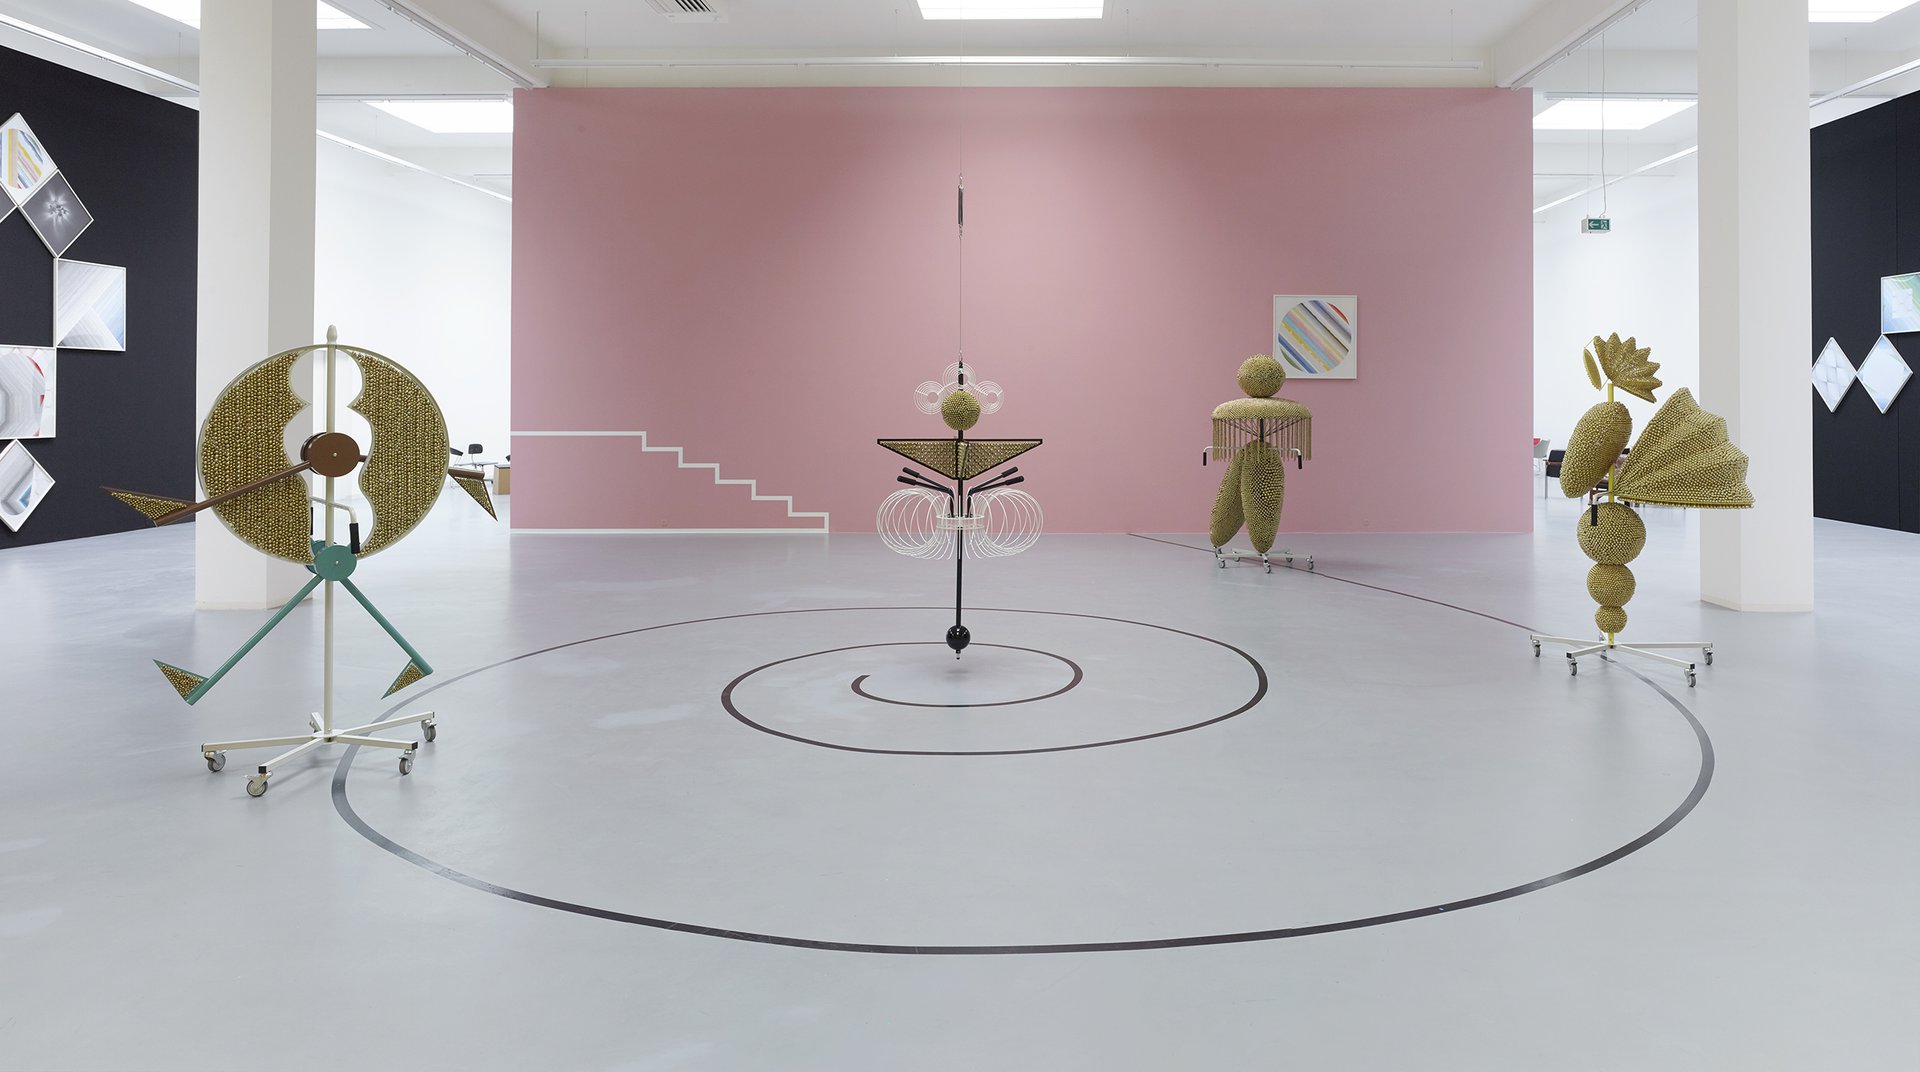 Haegue Yang, installation view, 2014, Bonner Kunstverein, Courtesy the artist. Photo: Simon Vogel